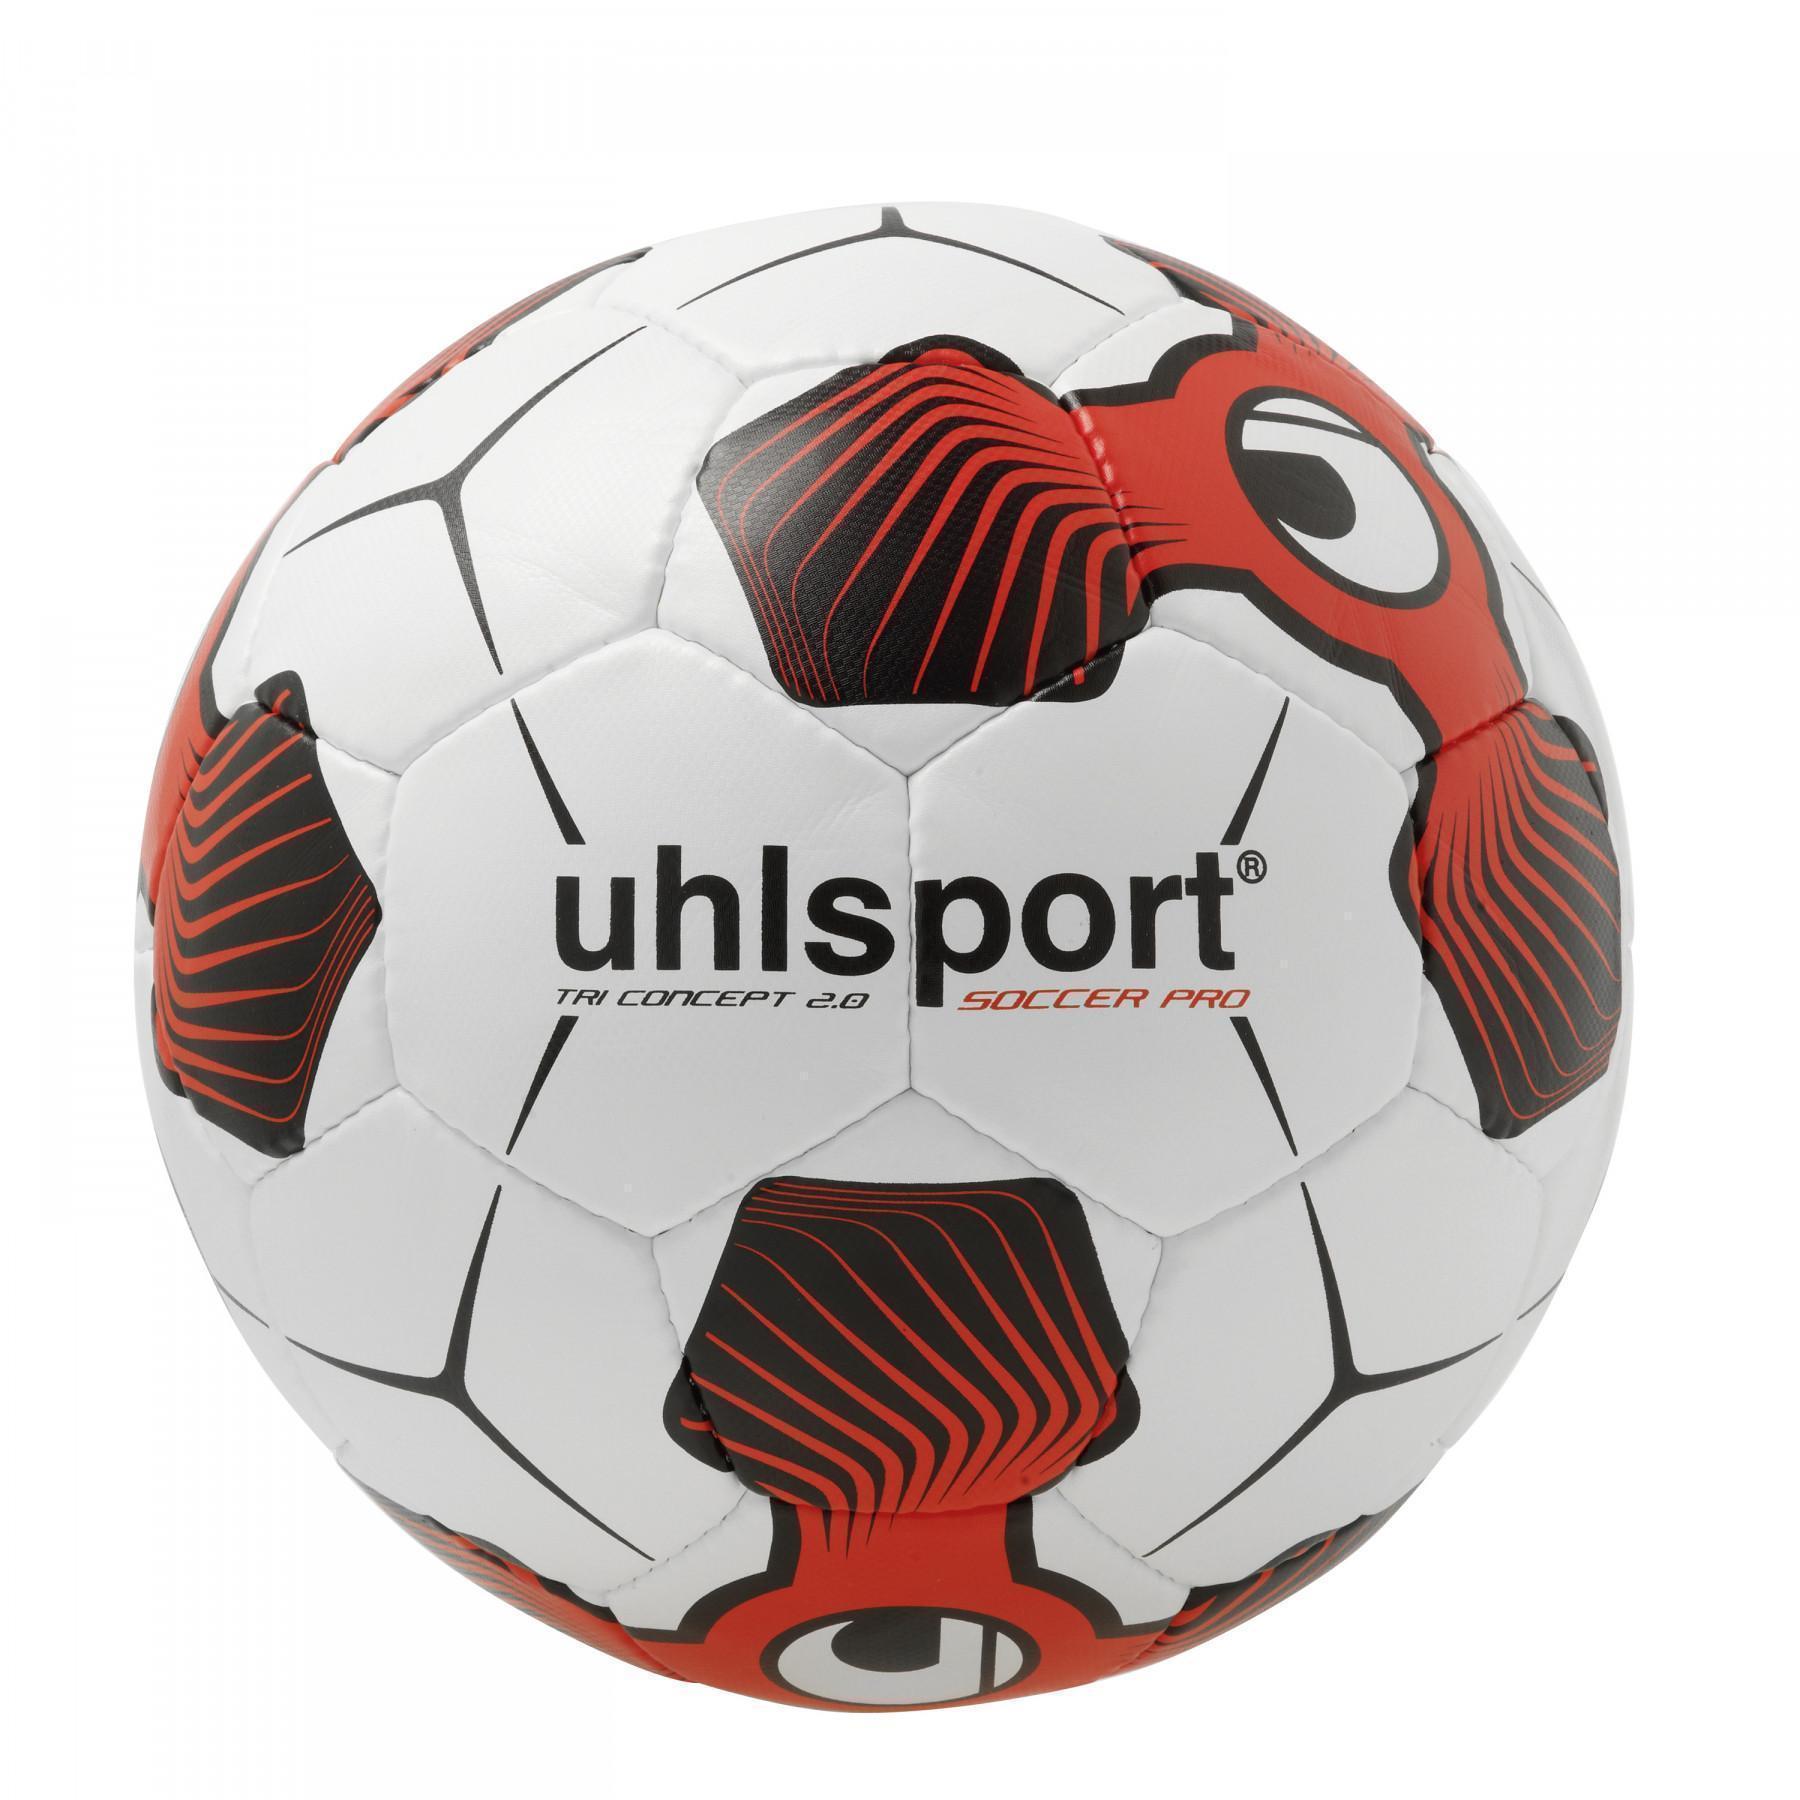 Pack of 10 balloons Uhlsport Soccer Pro 2.0